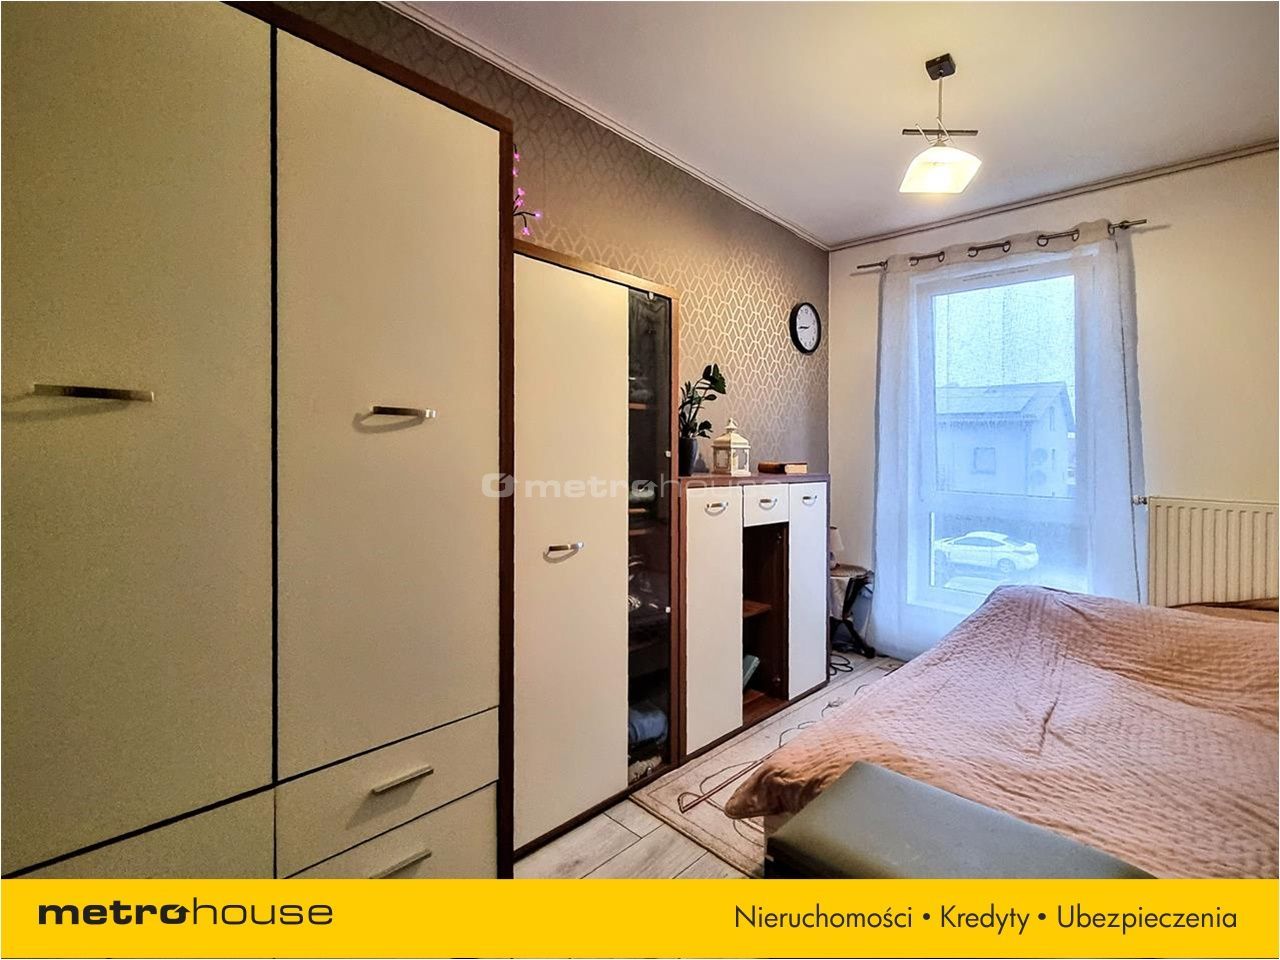 Mieszkanie na sprzedaż, Rumia, 4 pokoje, 115 mkw, za 619000 zł: zdjęcie 93005892